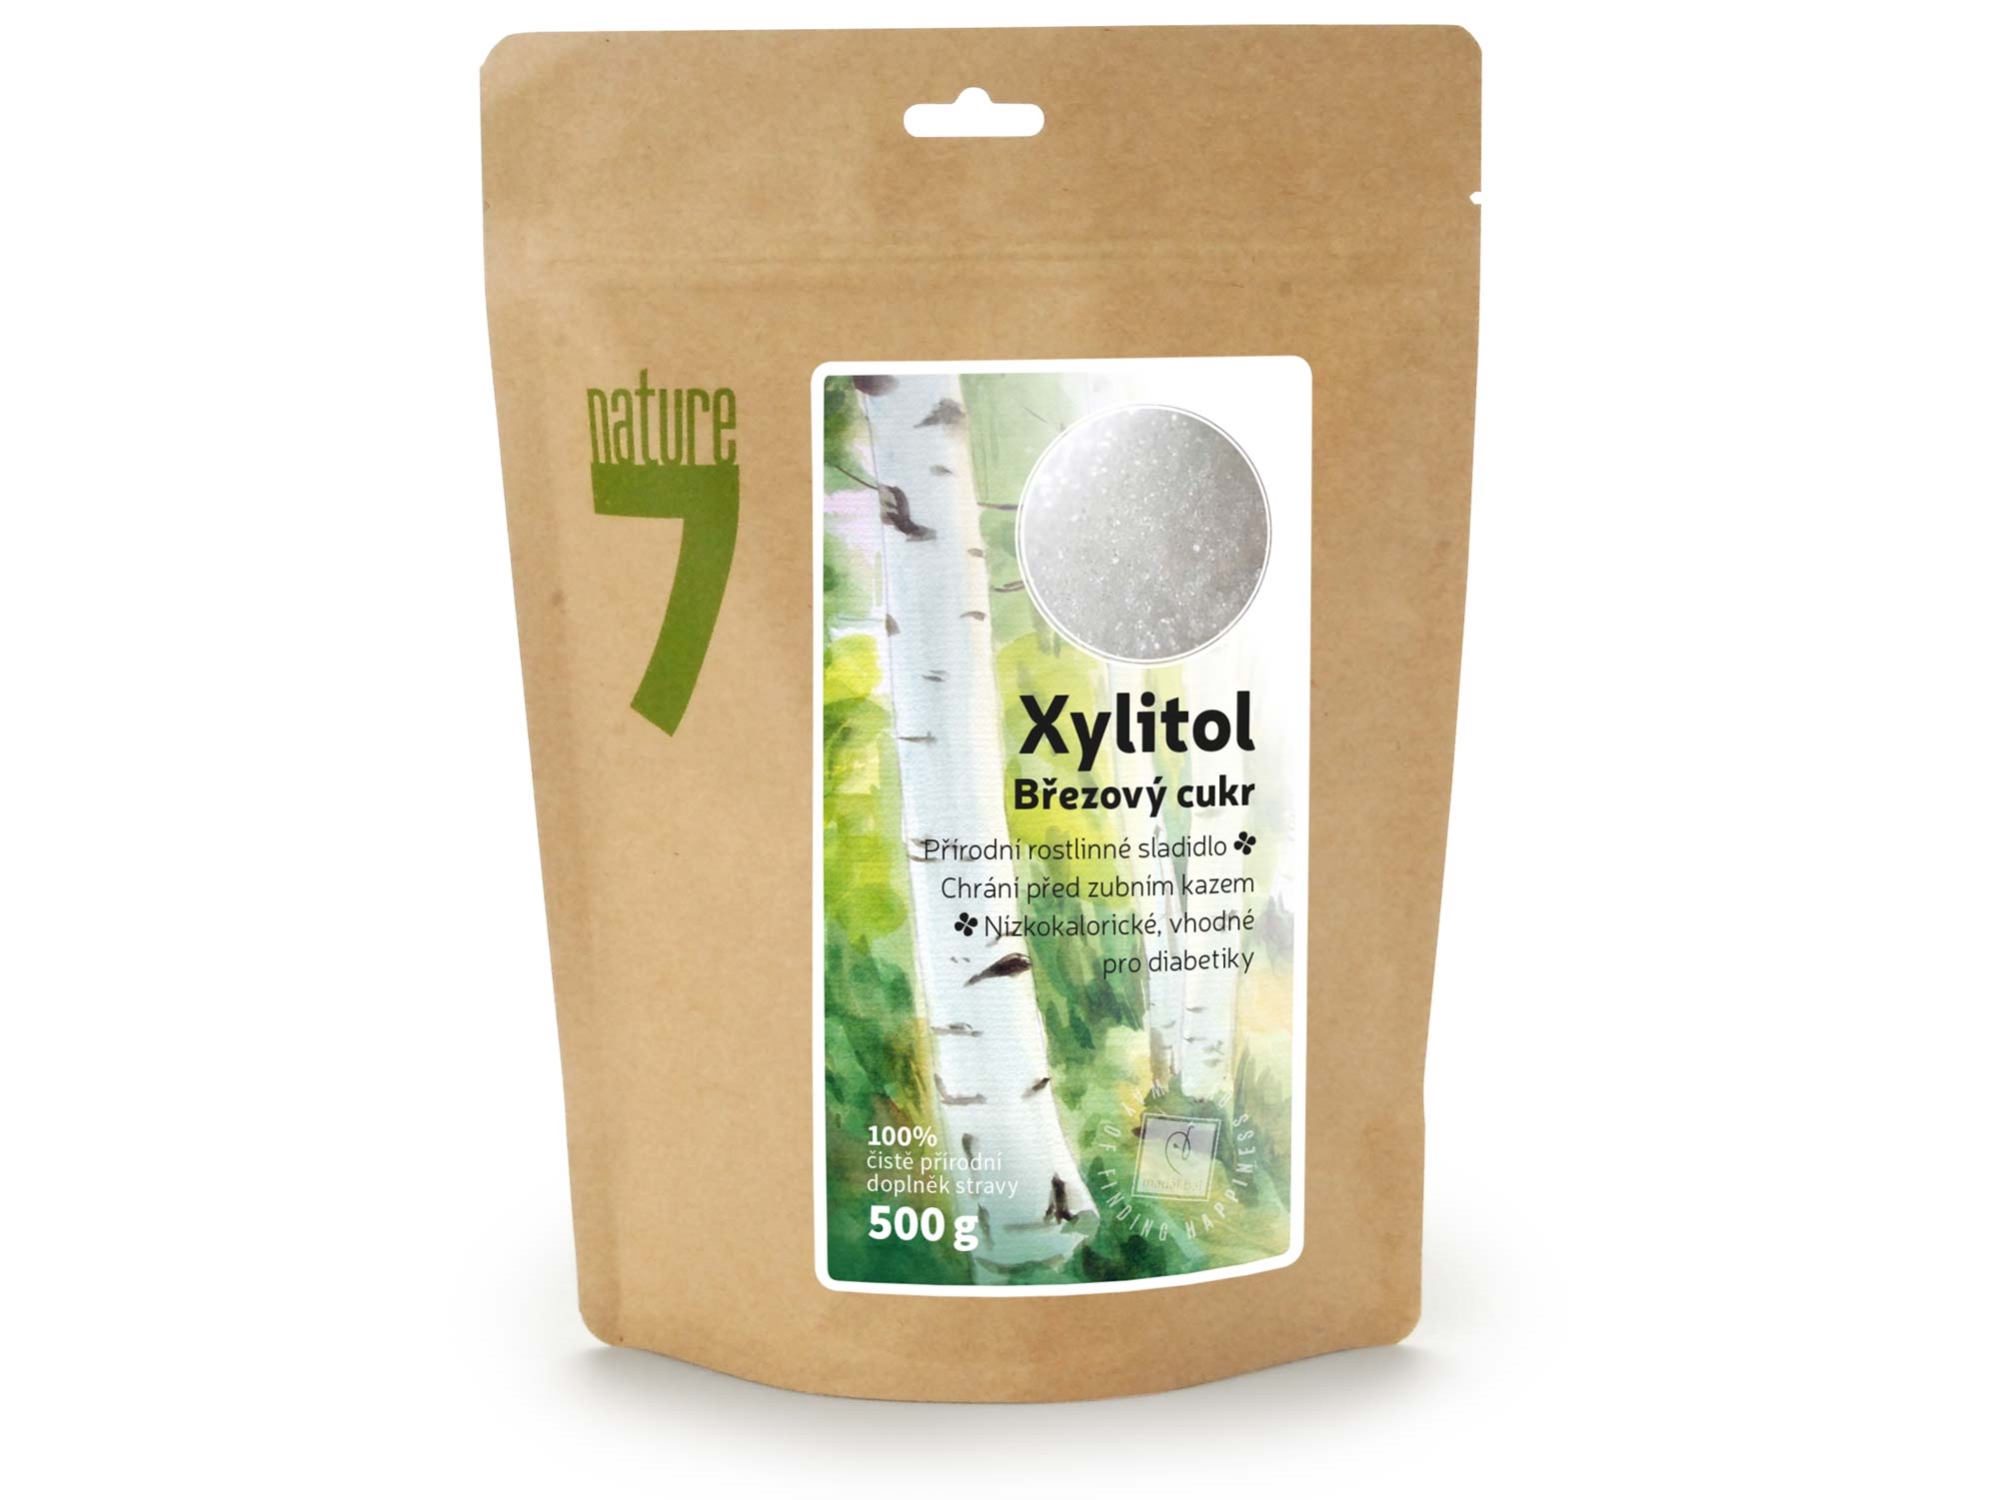 xylitol cukr, 500g jemná krupice - Nature7